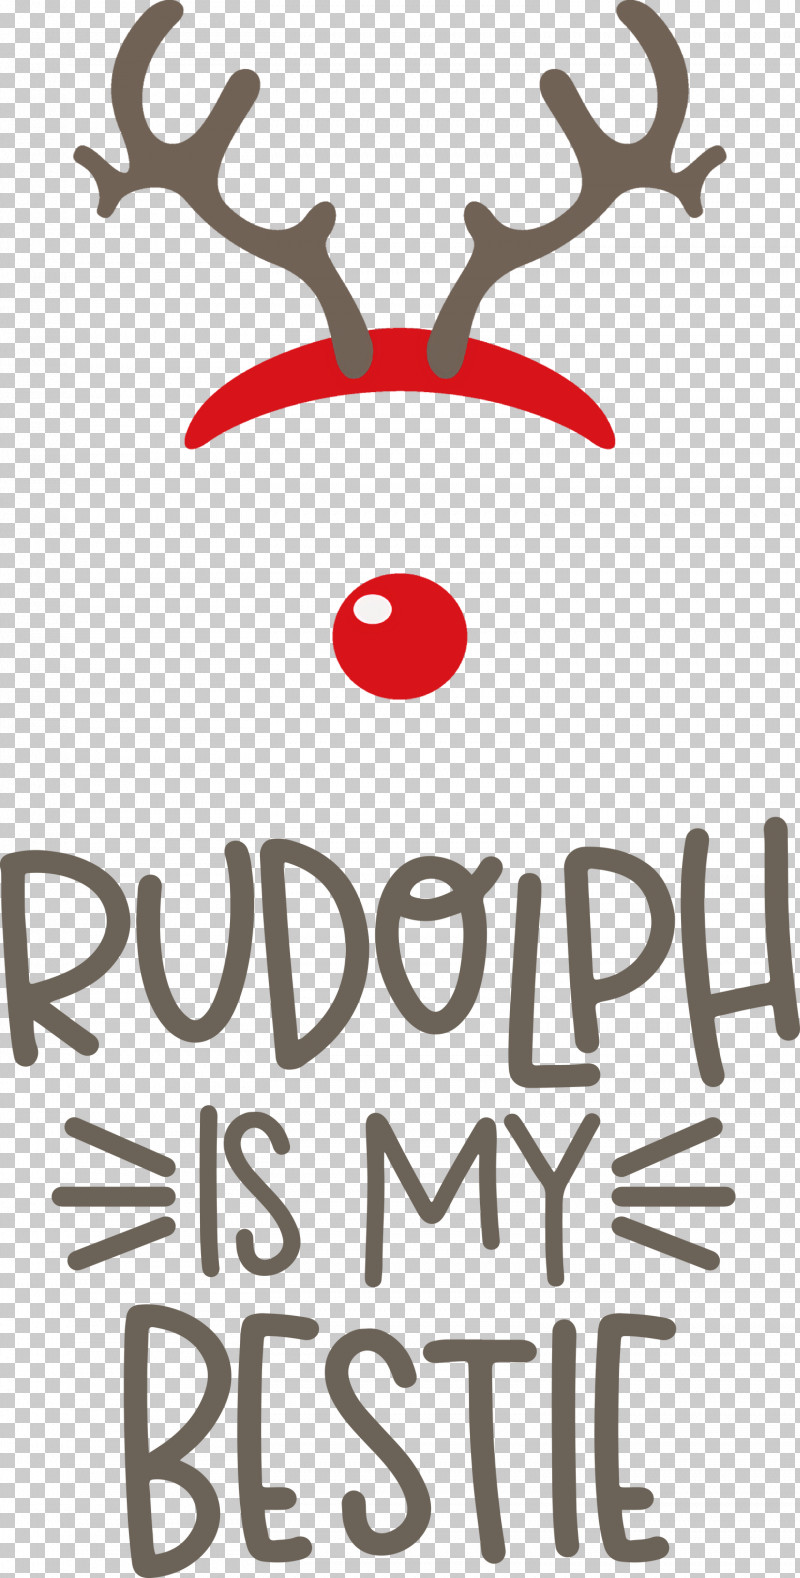 Rudolph Is My Bestie Rudolph Deer PNG, Clipart, Antler, Biology, Christmas, Deer, Logo Free PNG Download